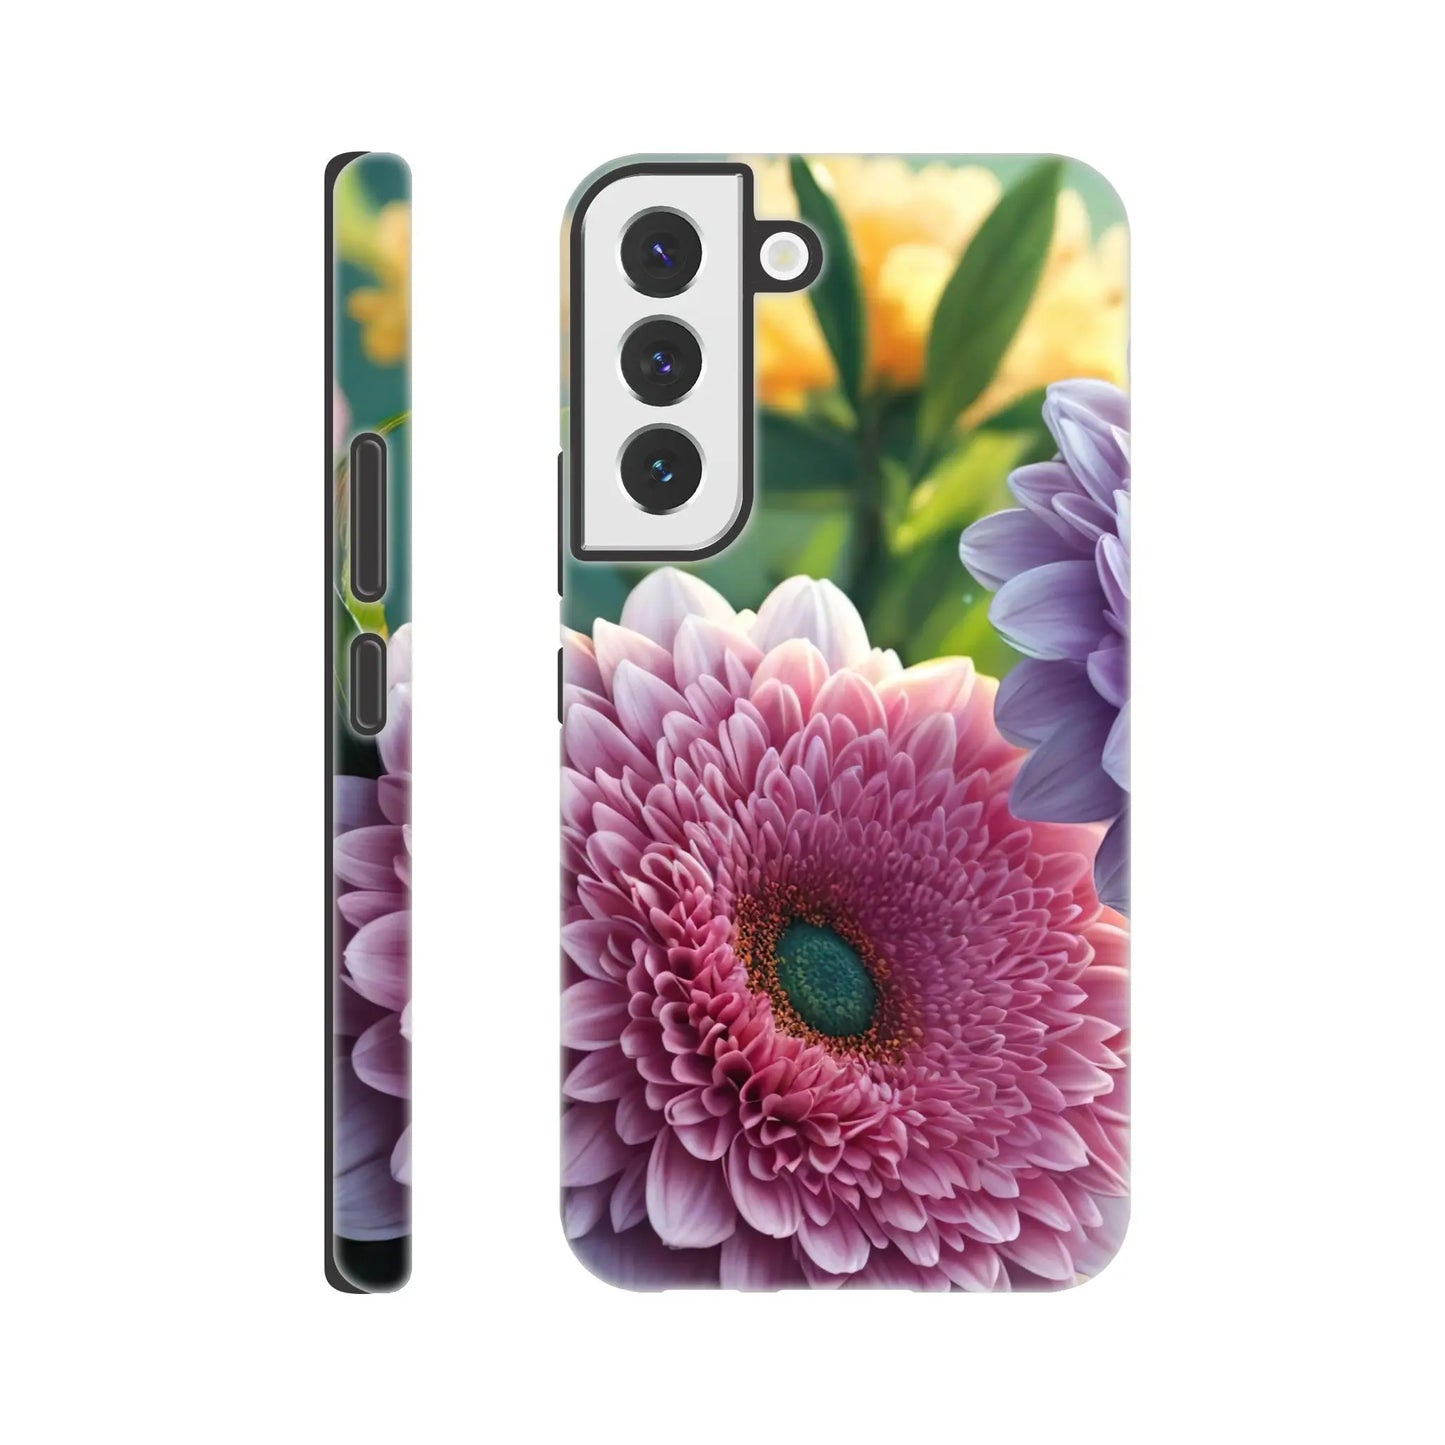 Smartphone-Hülle "Hart" - Blumen Vielfalt - Foto Stil, KI-Kunst, Pflanzen, Galaxy-S22 - RolConArt